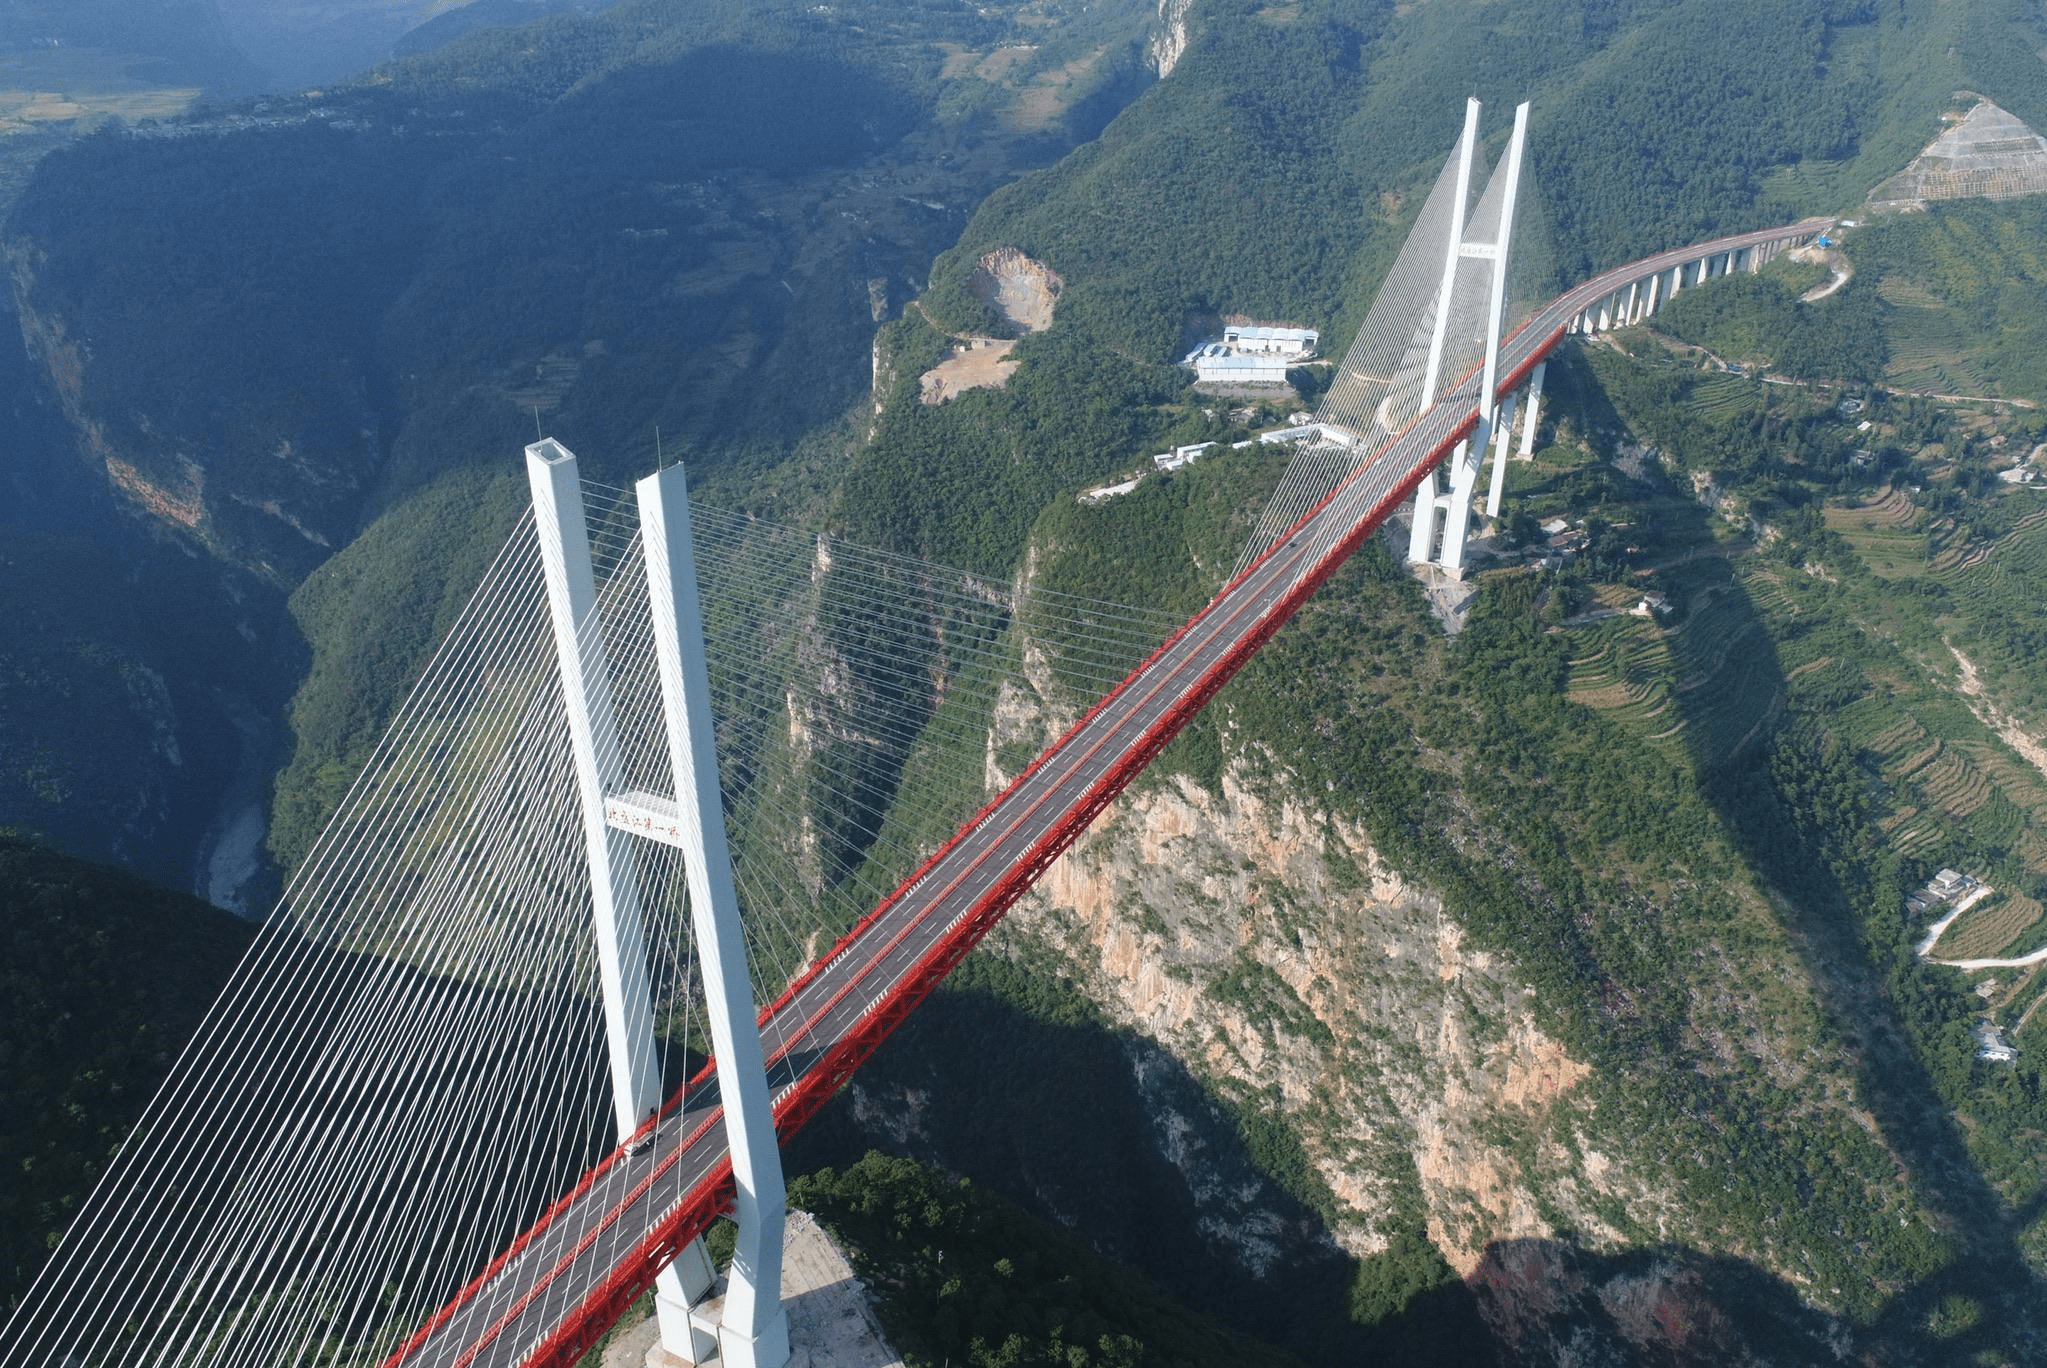 而北盘江大桥穿越了众多山脉,此桥北起贵州六盘水地点,南至云南曲靖